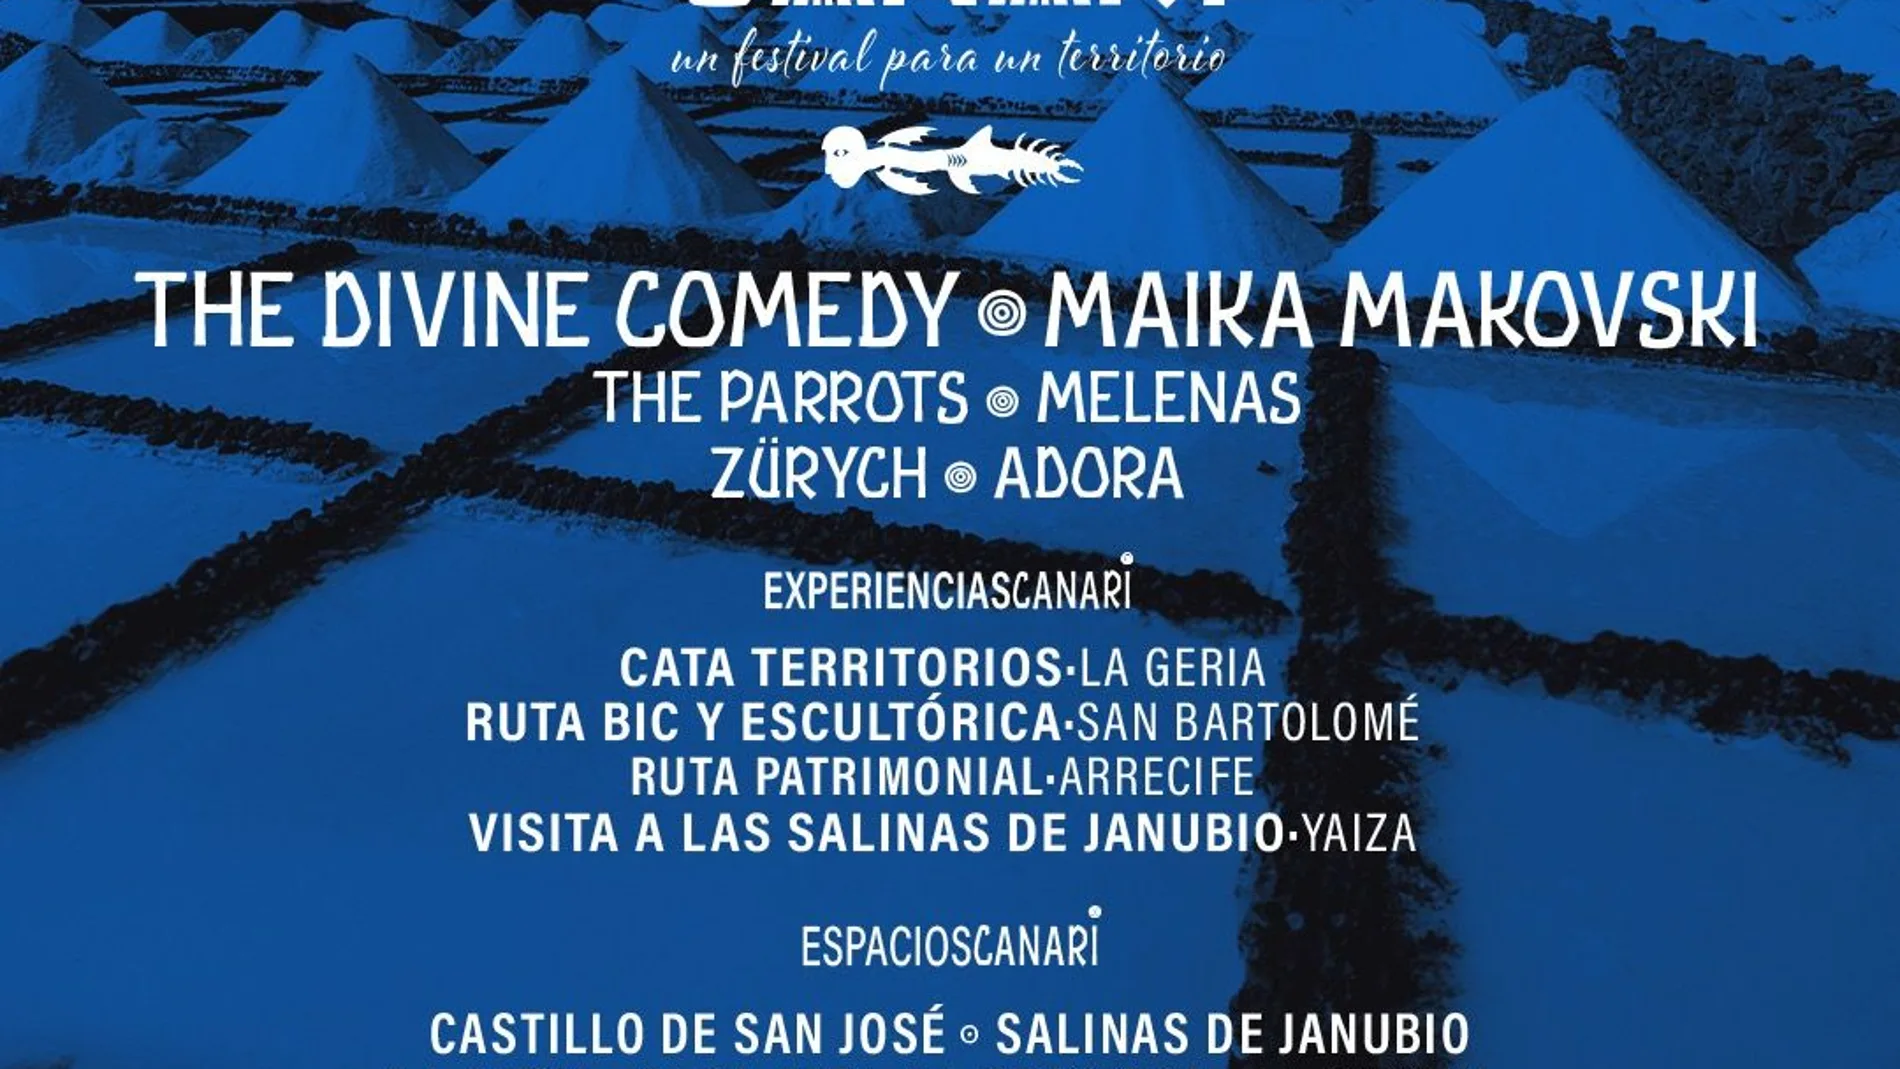 Festivales Para un Territorio presenta Canari, en Lanzarote